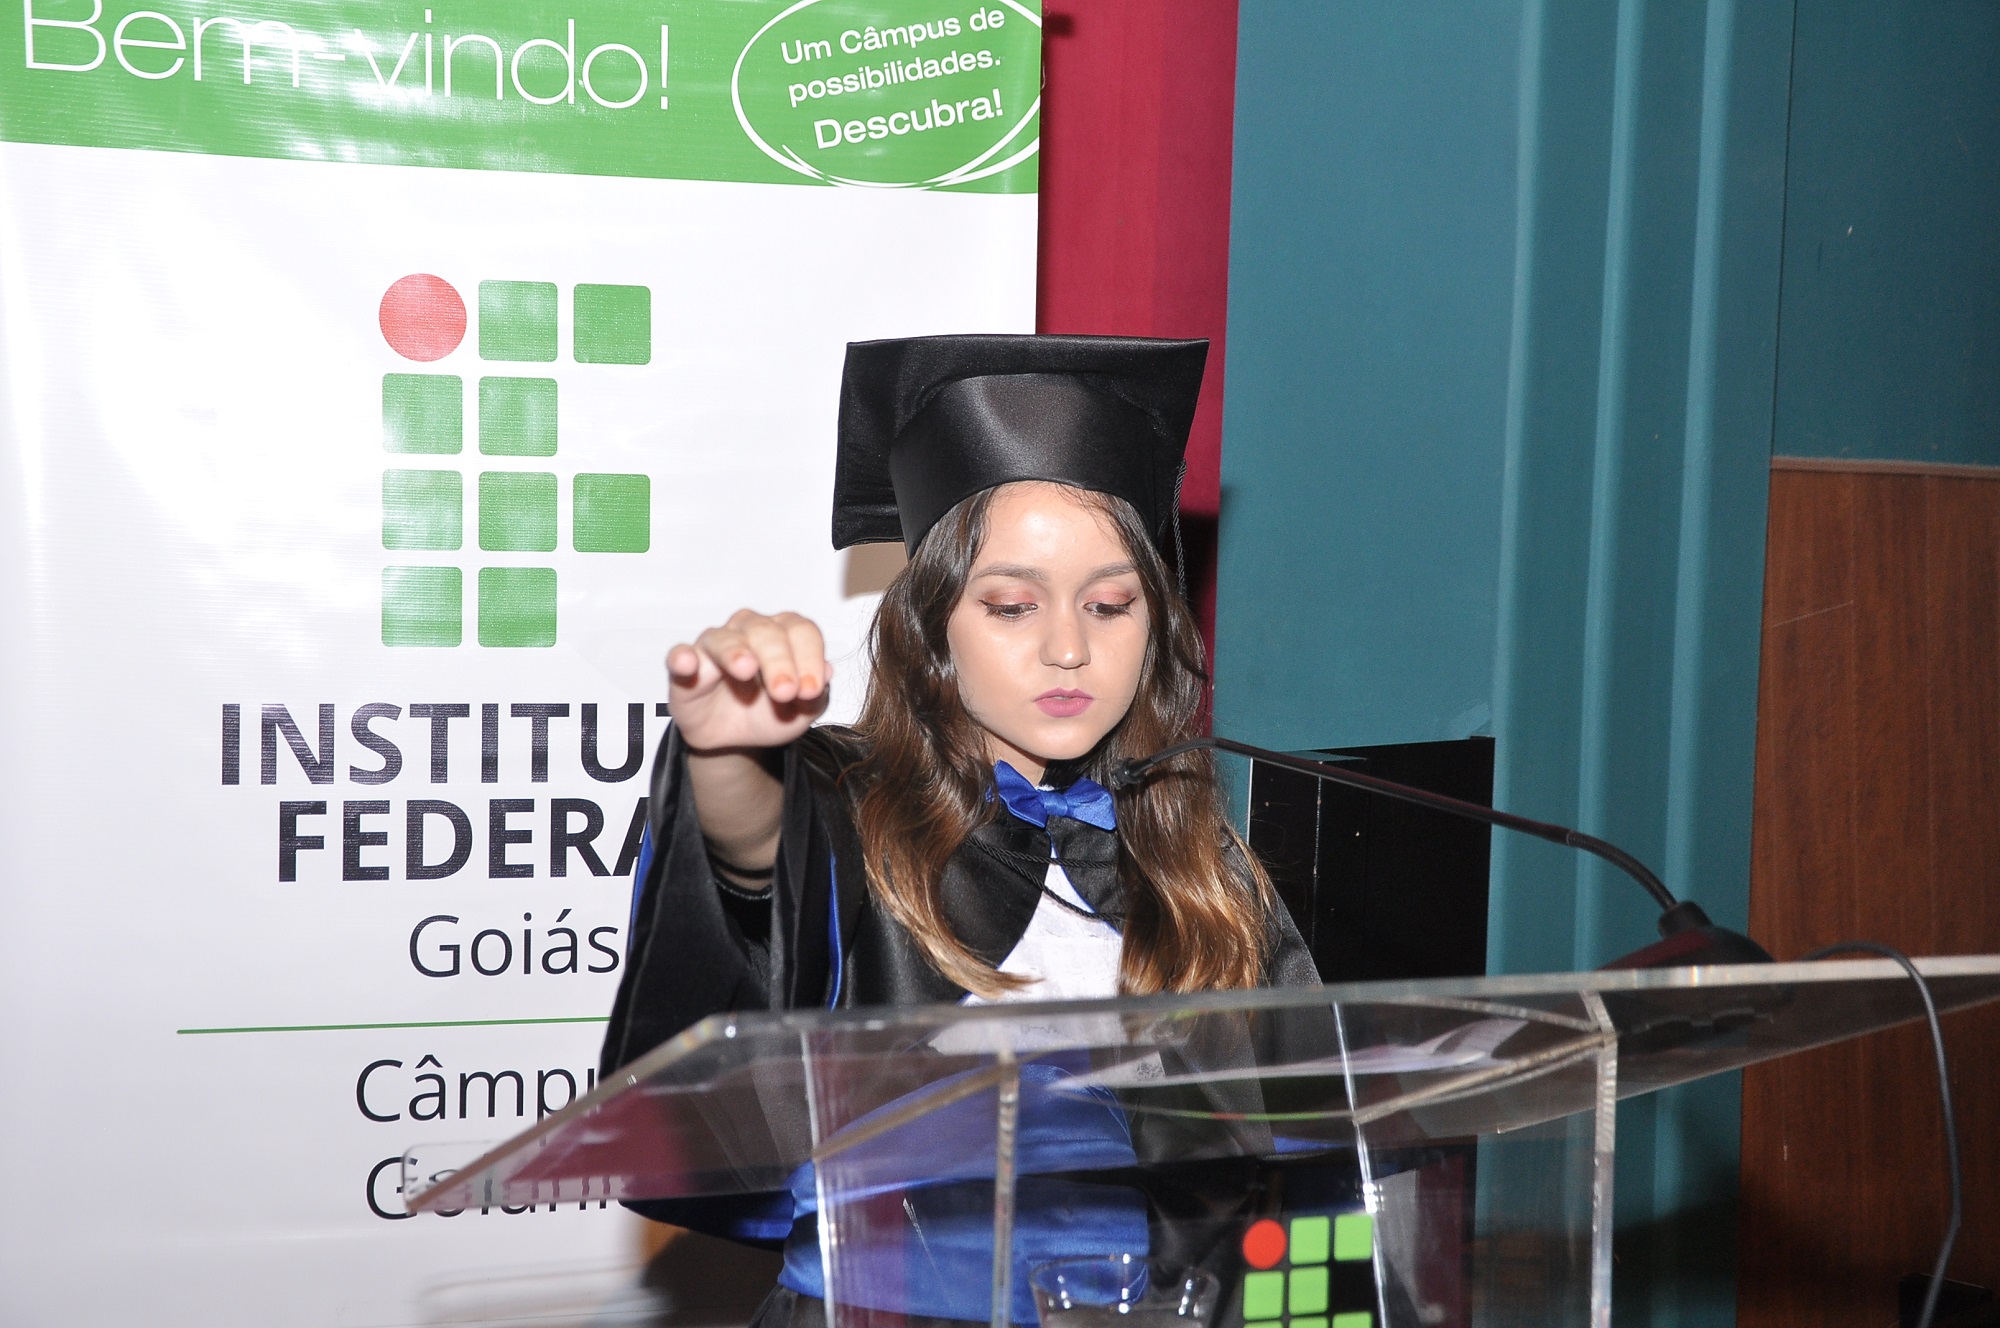 O juramento foi proferido pela aluna concluinte do curso técnico integrado em Mineração, Aliny Canedo Pimenta, no dia 22.